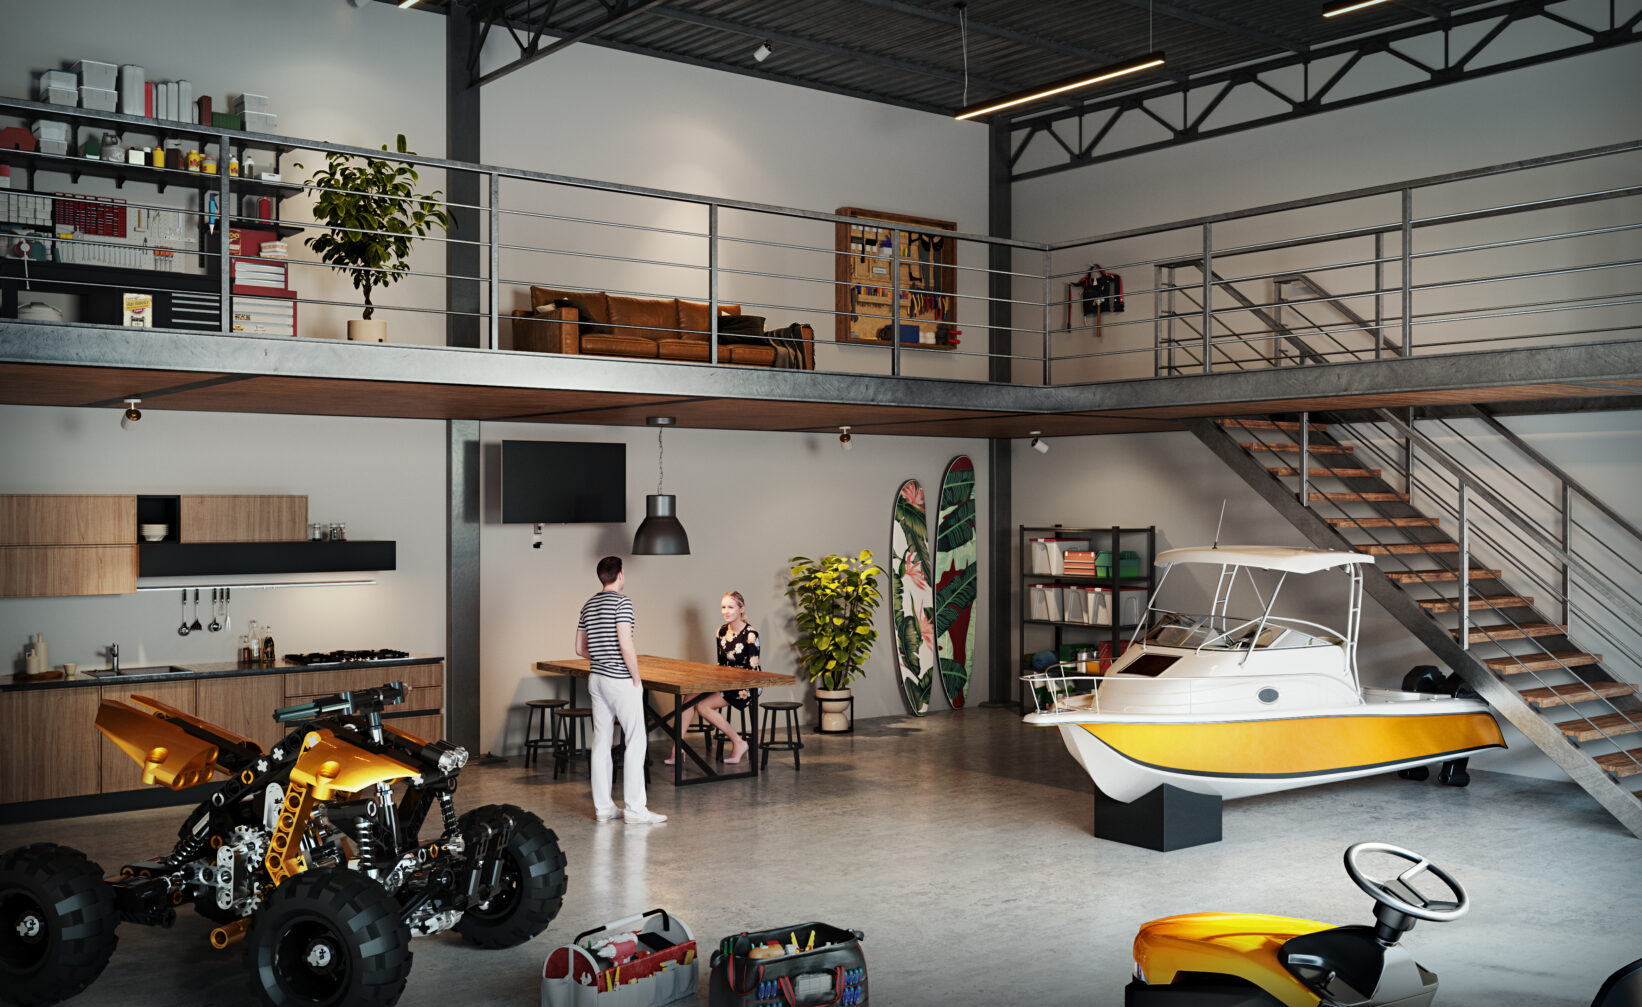 en mann i en garasje med en motorsykkel og en båt.